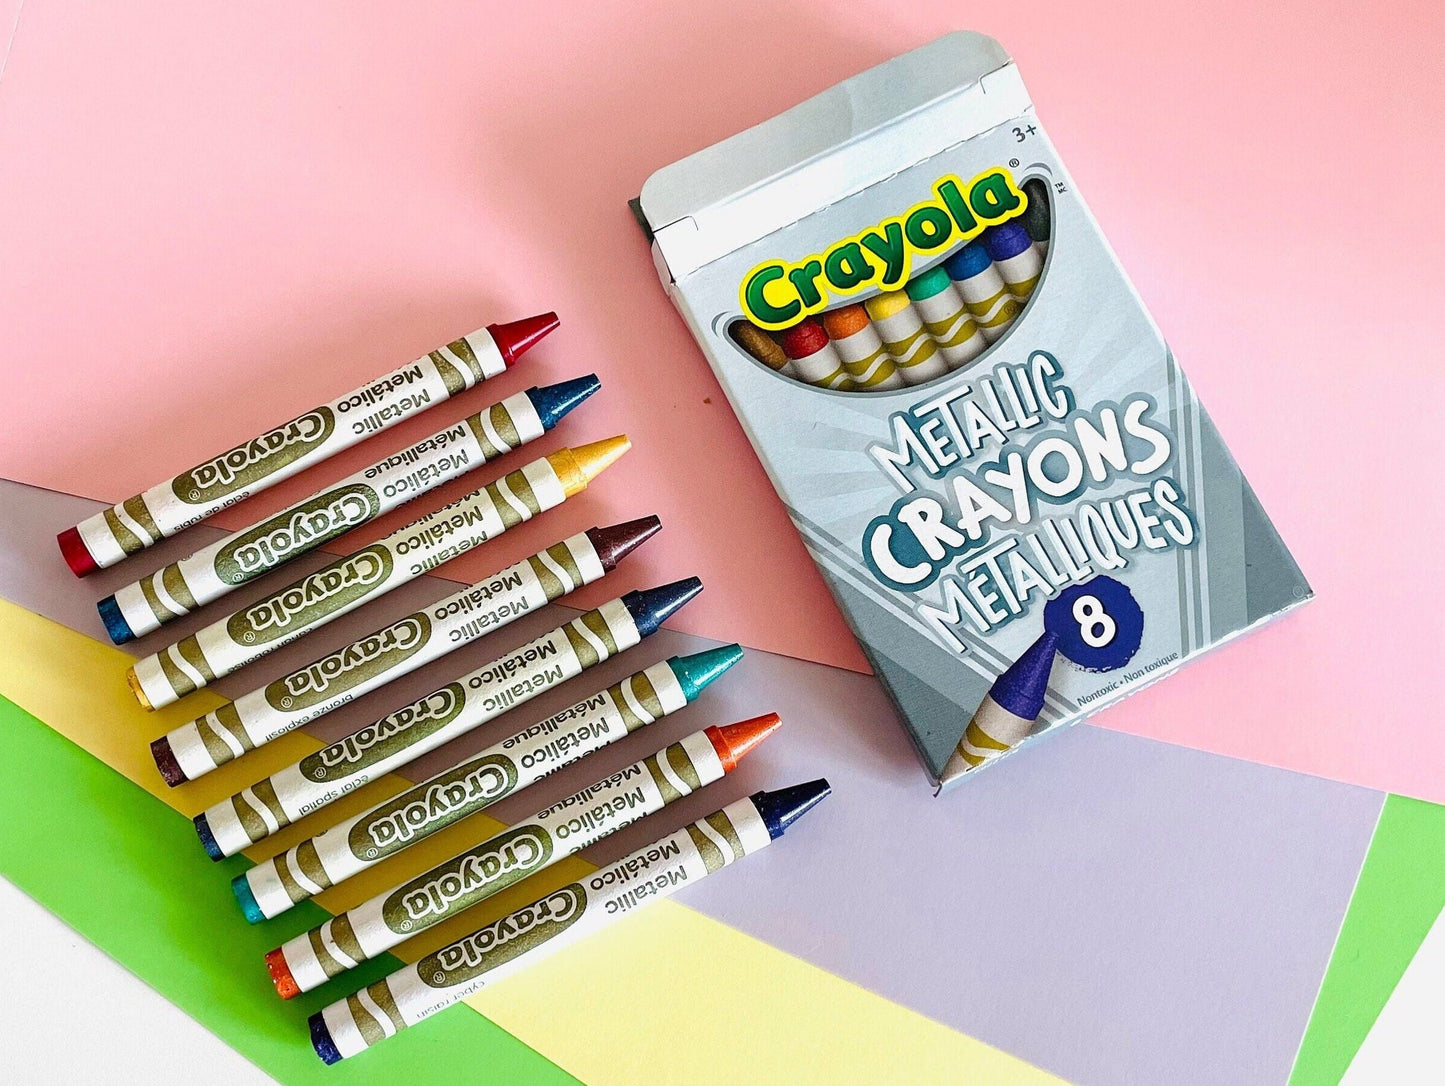 Crayola 8 Metallic Washable Crayons